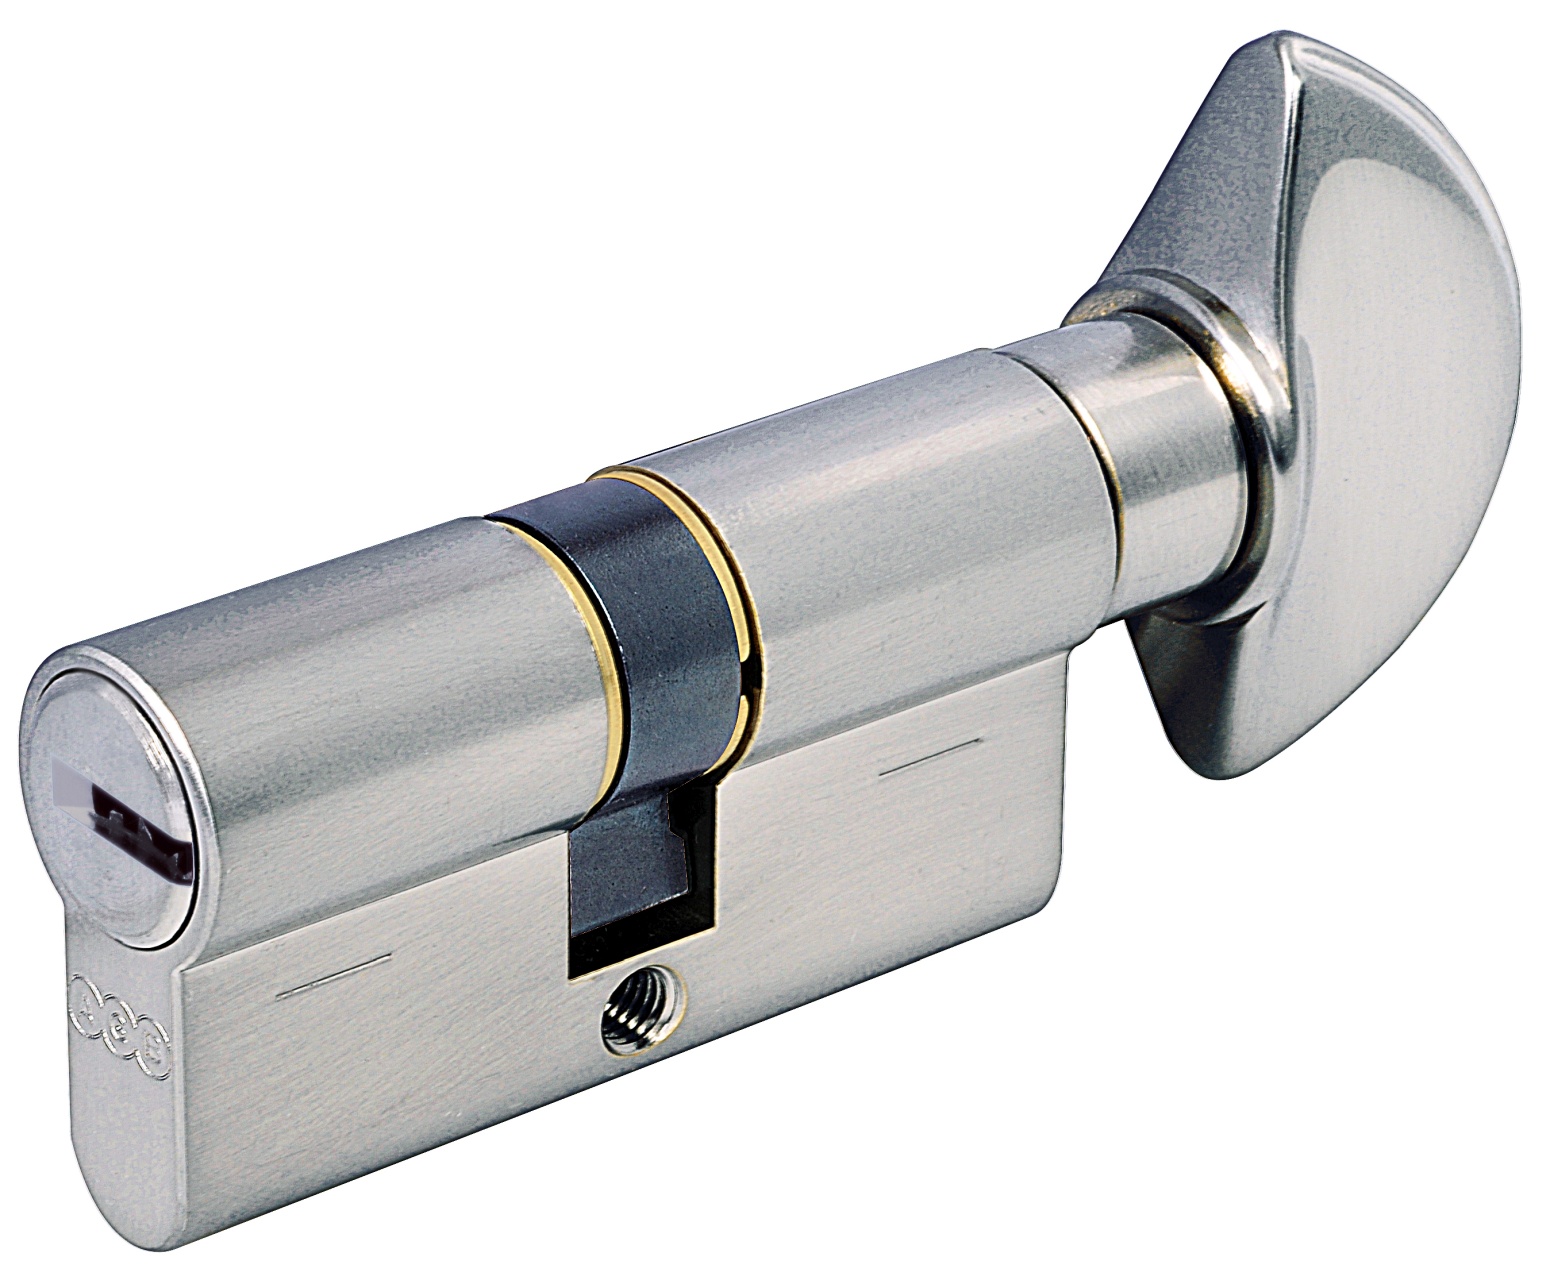 AGB -  Cilindro SCUDO 5000 PS frizionato anti bamping con chiave e pomolo - col. LUCIDO VERNICIATO - lunghezza 90 - misura P-50-10-30